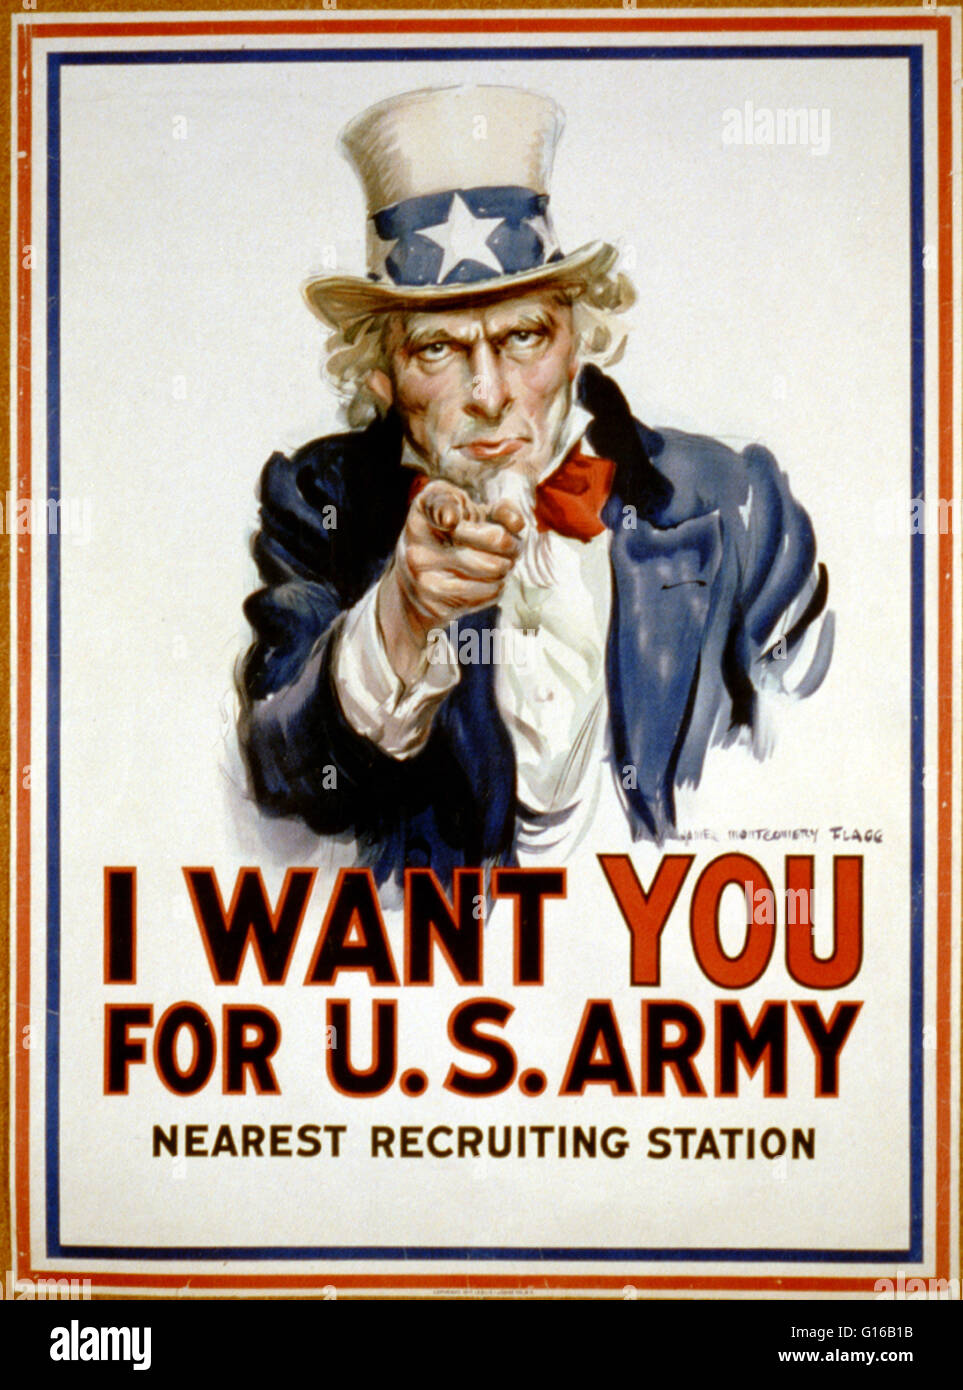 Plakat für "Ich will dich für U.s. Army" zeigt Uncle Sam zeigte mit dem Finger auf den Betrachter zur Rekrutierung von Soldaten für die amerikanische Armee im ersten Weltkrieg. Die gedruckten Satz "Nearest Personalbeschaffung" hat eine Leerstelle unten, um den Absender hinzufügen Stockfoto